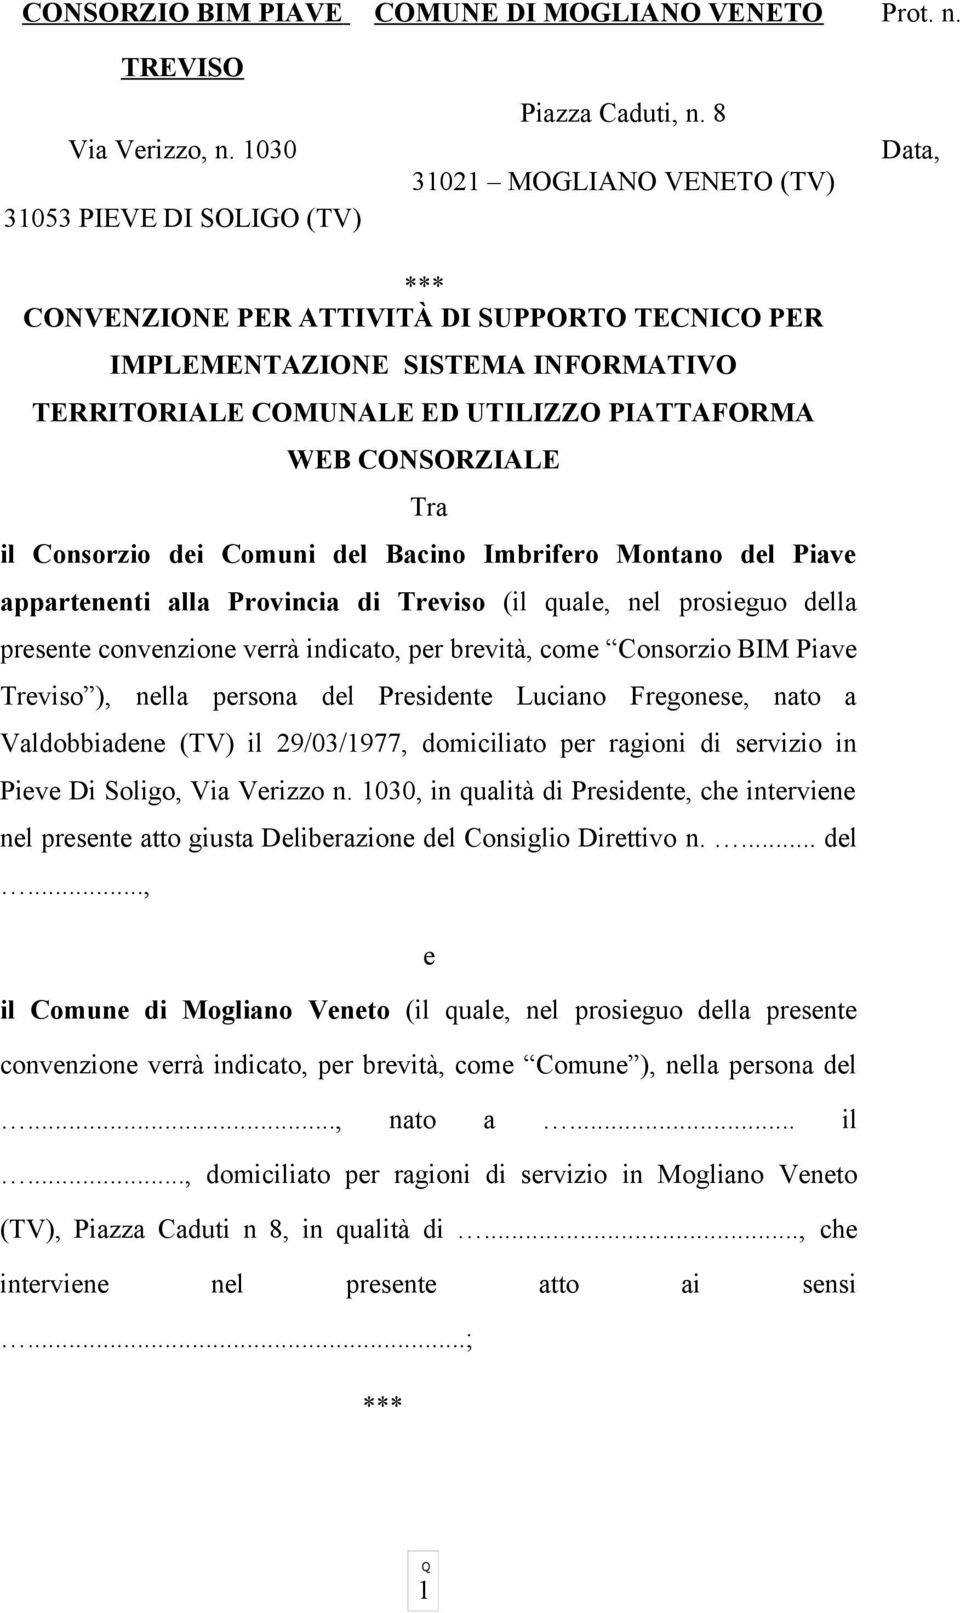 Consorzio dei Comuni del Bacino Imbrifero Montano del Piave appartenenti alla Provincia di Treviso (il quale, nel prosieguo della presente convenzione verrà indicato, per brevità, come Consorzio BIM